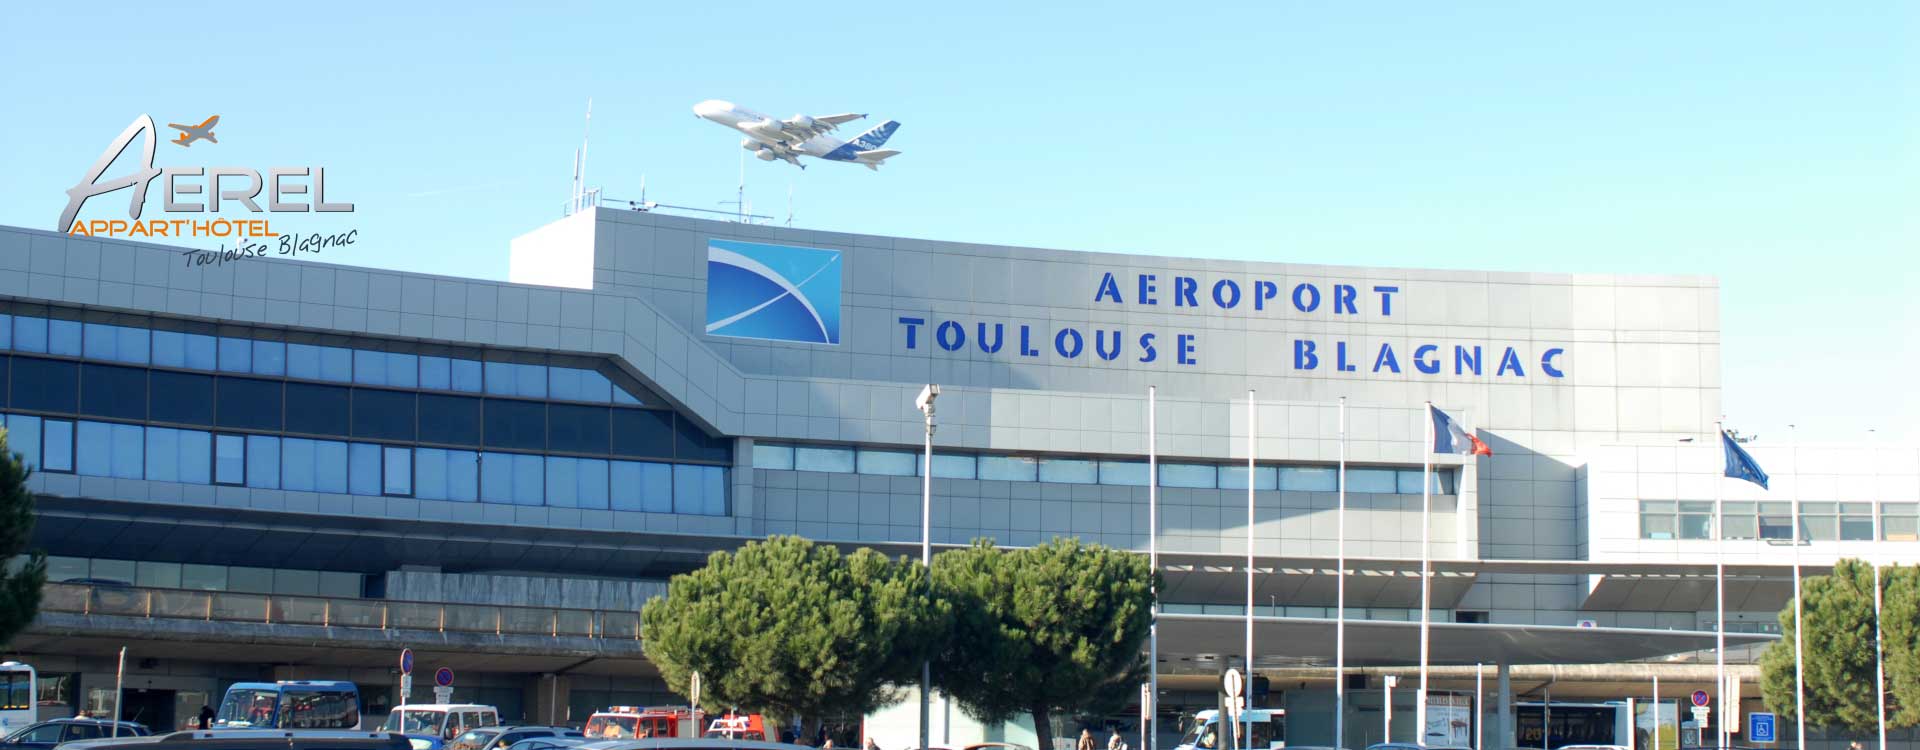 (Français) Aéroport Toulouse Blagnac